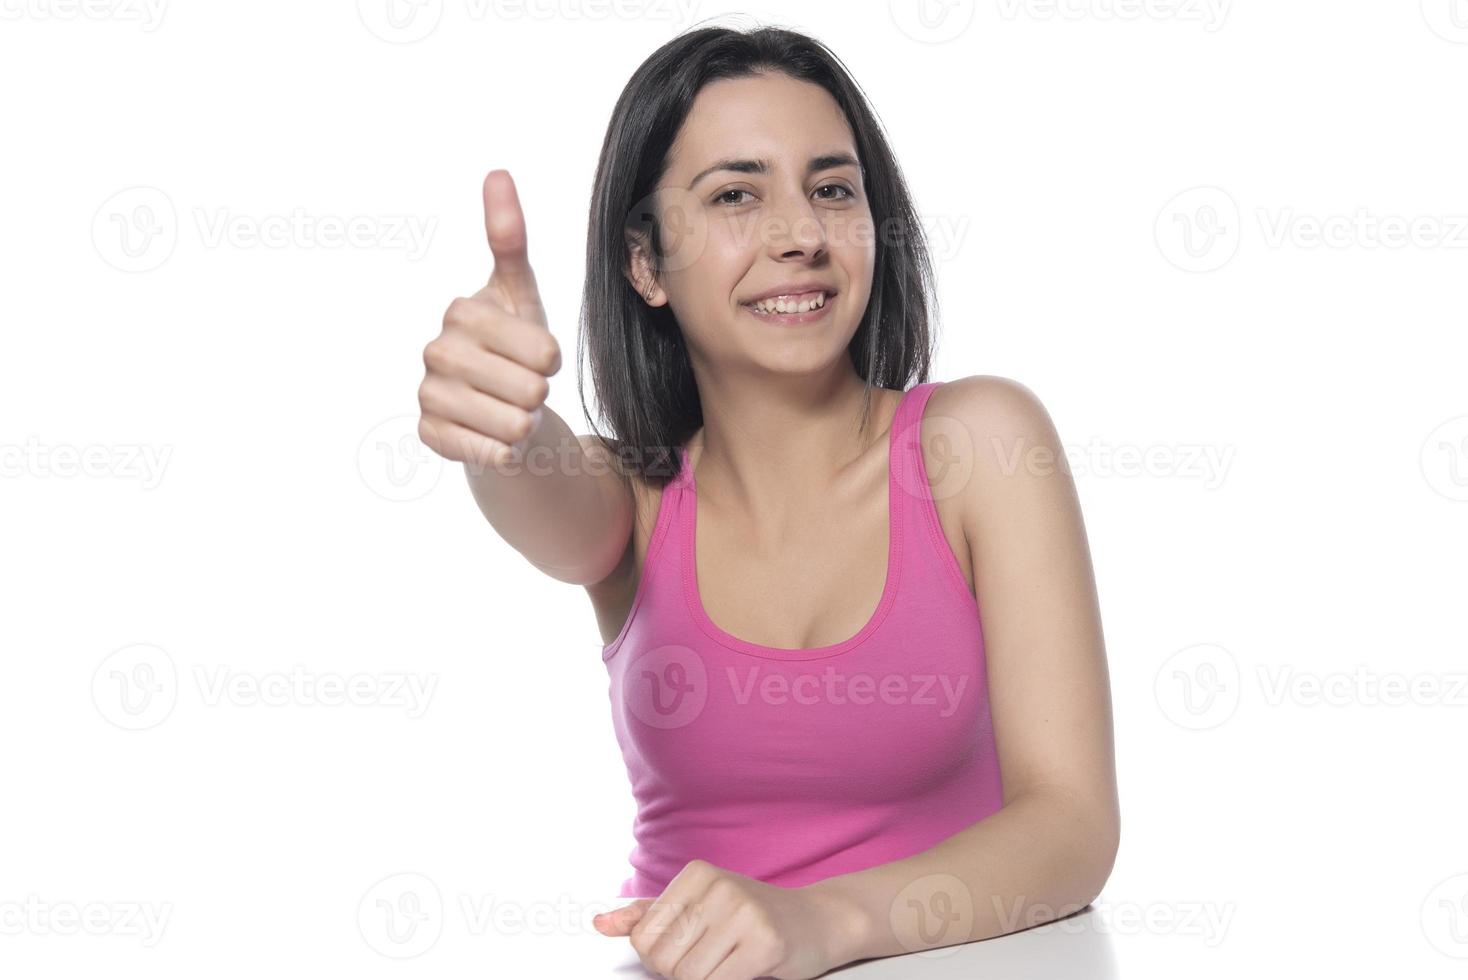 gros plan de la main féminine montrant le signe du pouce levé sur fond blanc. photo